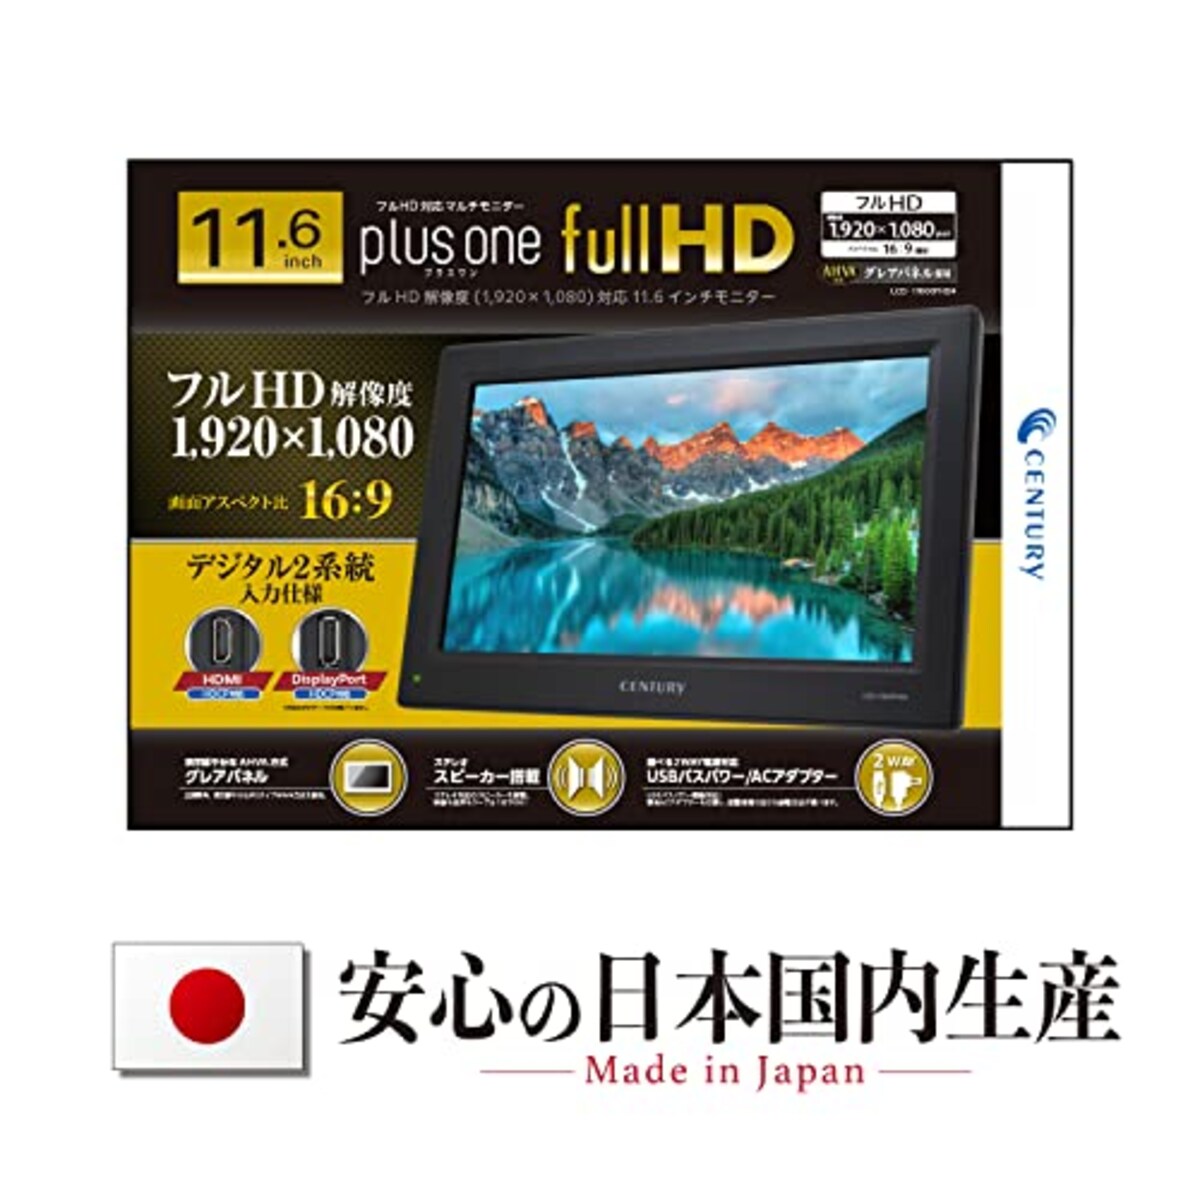  センチュリー HDMI/DisplayPort 入力対応11.6インチ plus one Full HDモニター LCD-11600FHD4_FP画像8 